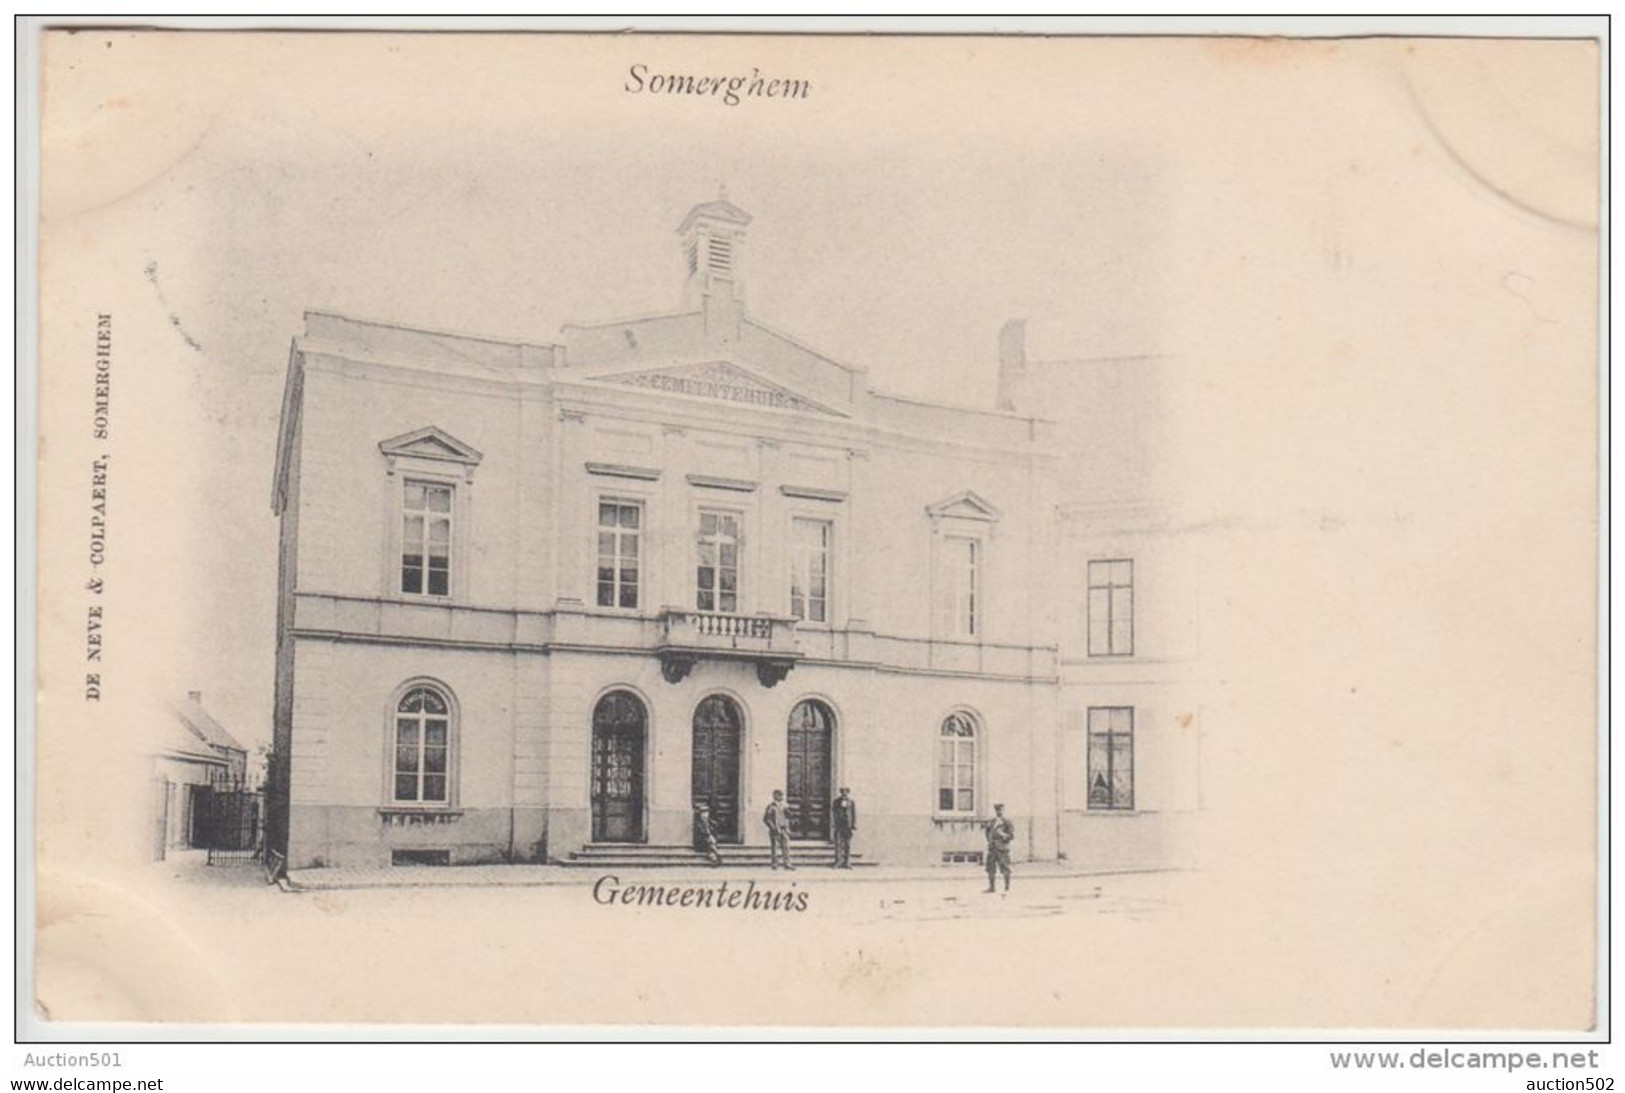 23458g GEMEENTEHUIS - Somerghem - 1901 - Zomergem